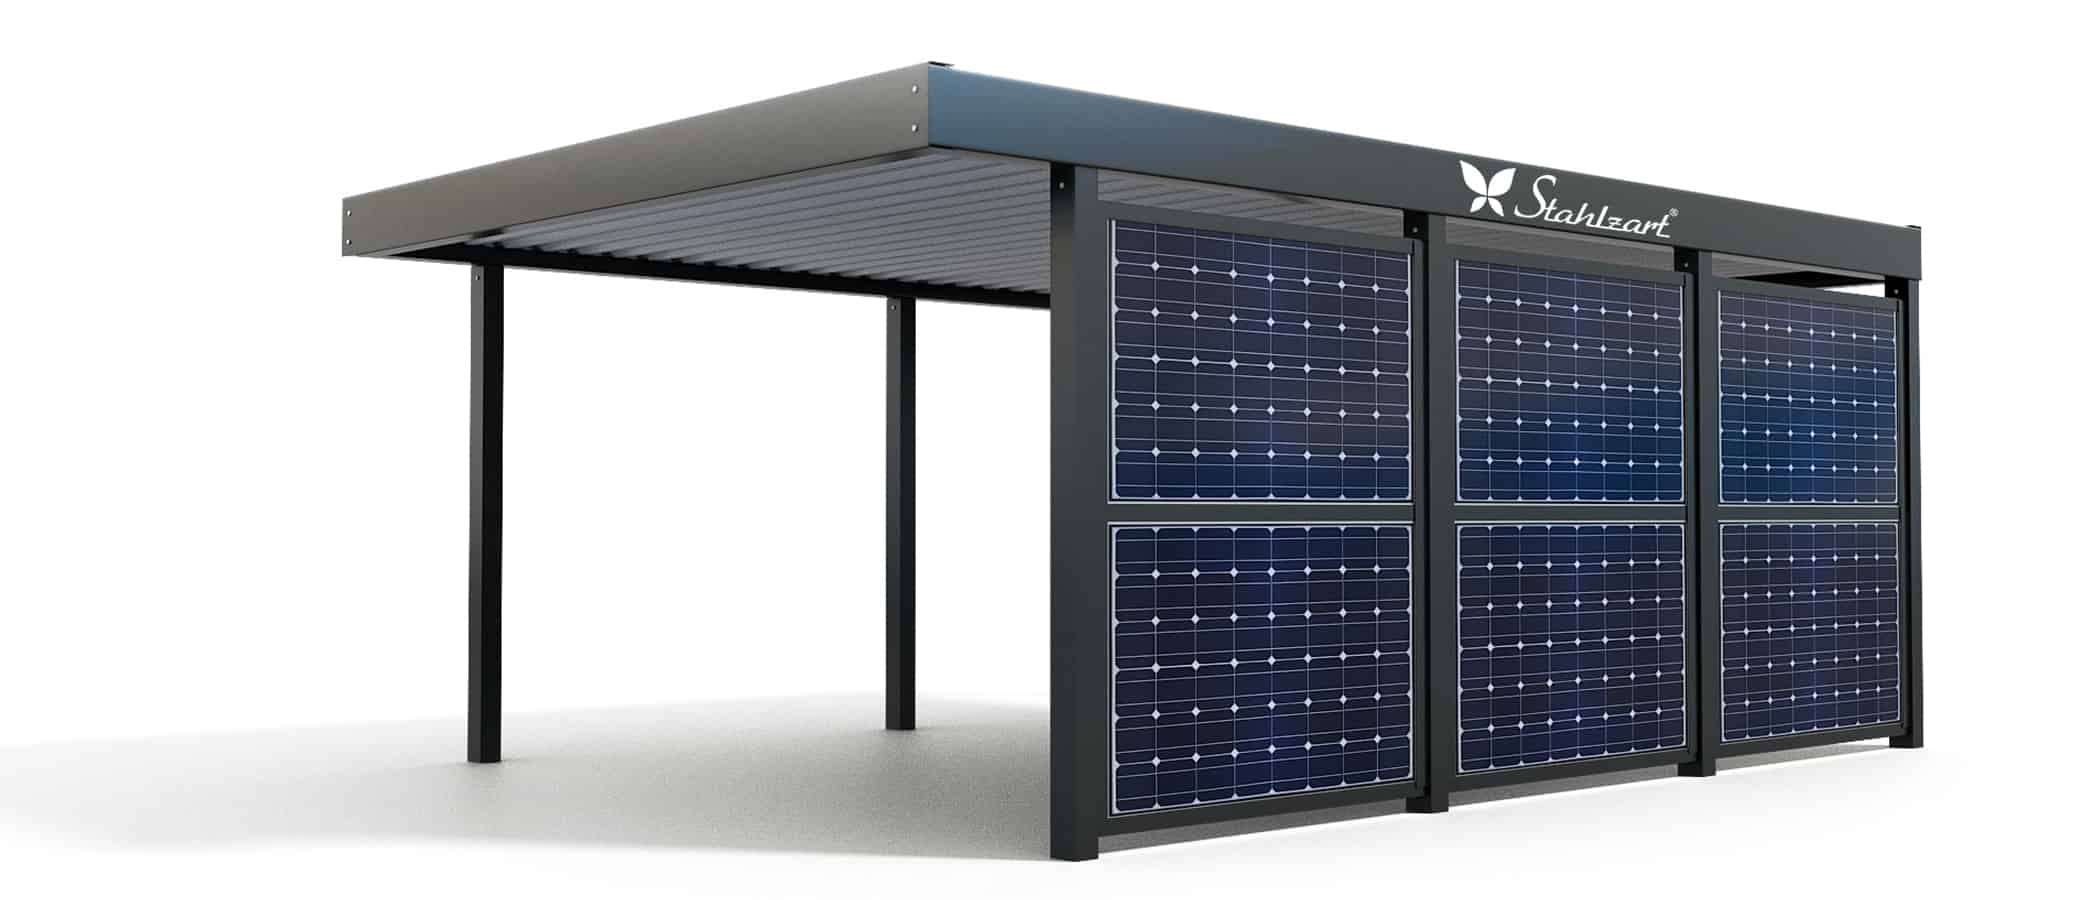 stahlzart-solar-carport-carports-e-fahrzeuge-solaranlage-strom-solarcarport-e-auto-kosten-30-jahre-flachdach-photovoltaik-solarmodule-wand-vorteile-fragen-metall-stahl-offen-freistehend